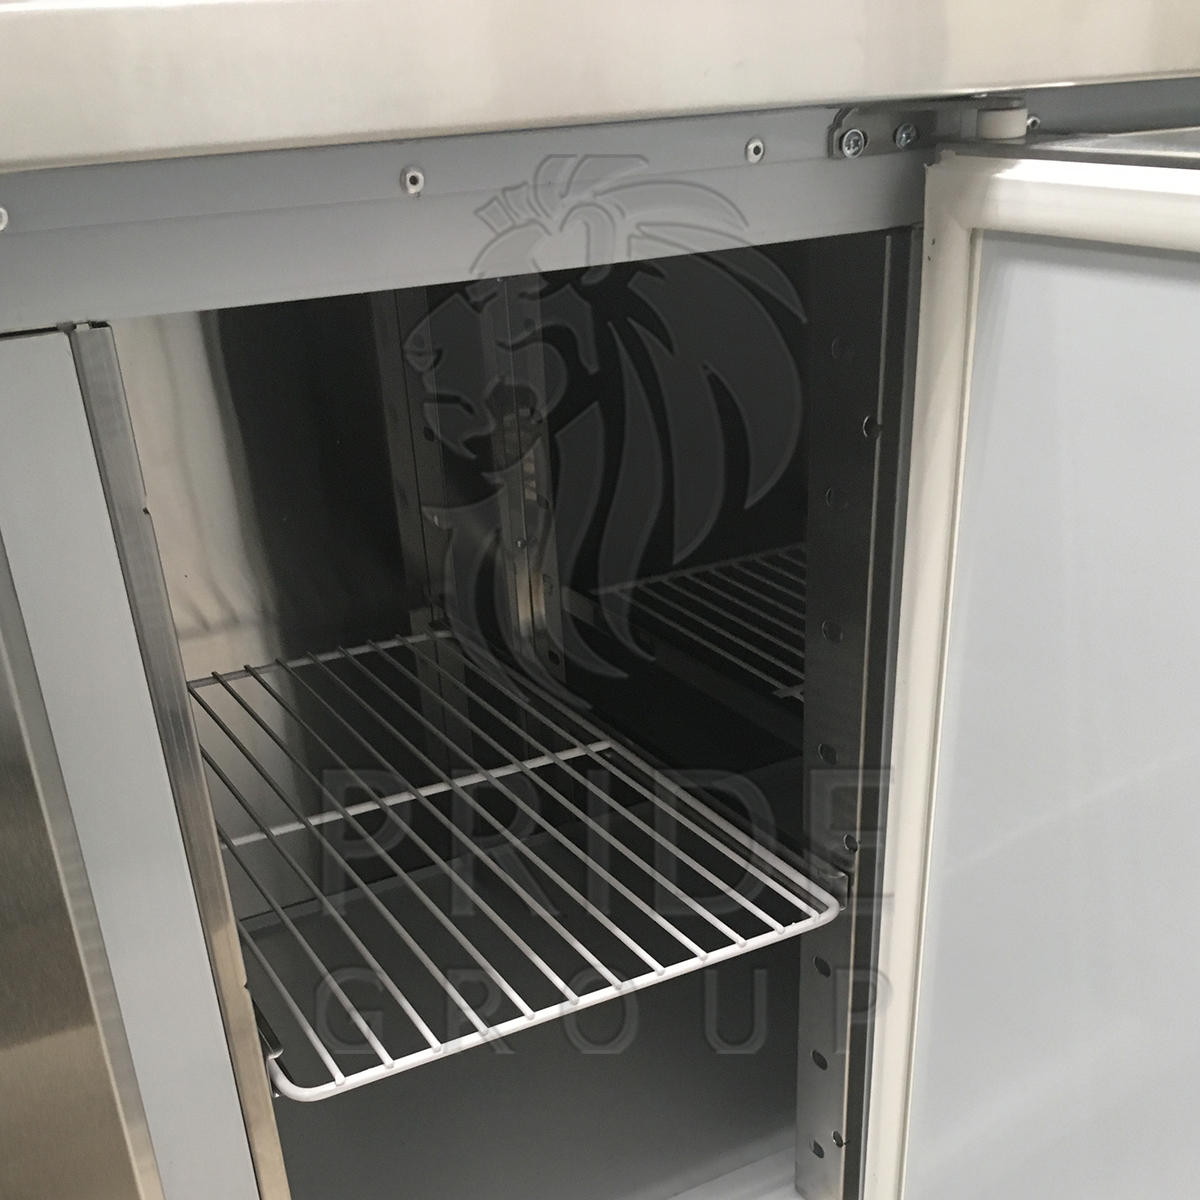 Стол холодильный для пиццы Finist СХСнпц-700-2 нижний агрегат 1000х700х850 мм